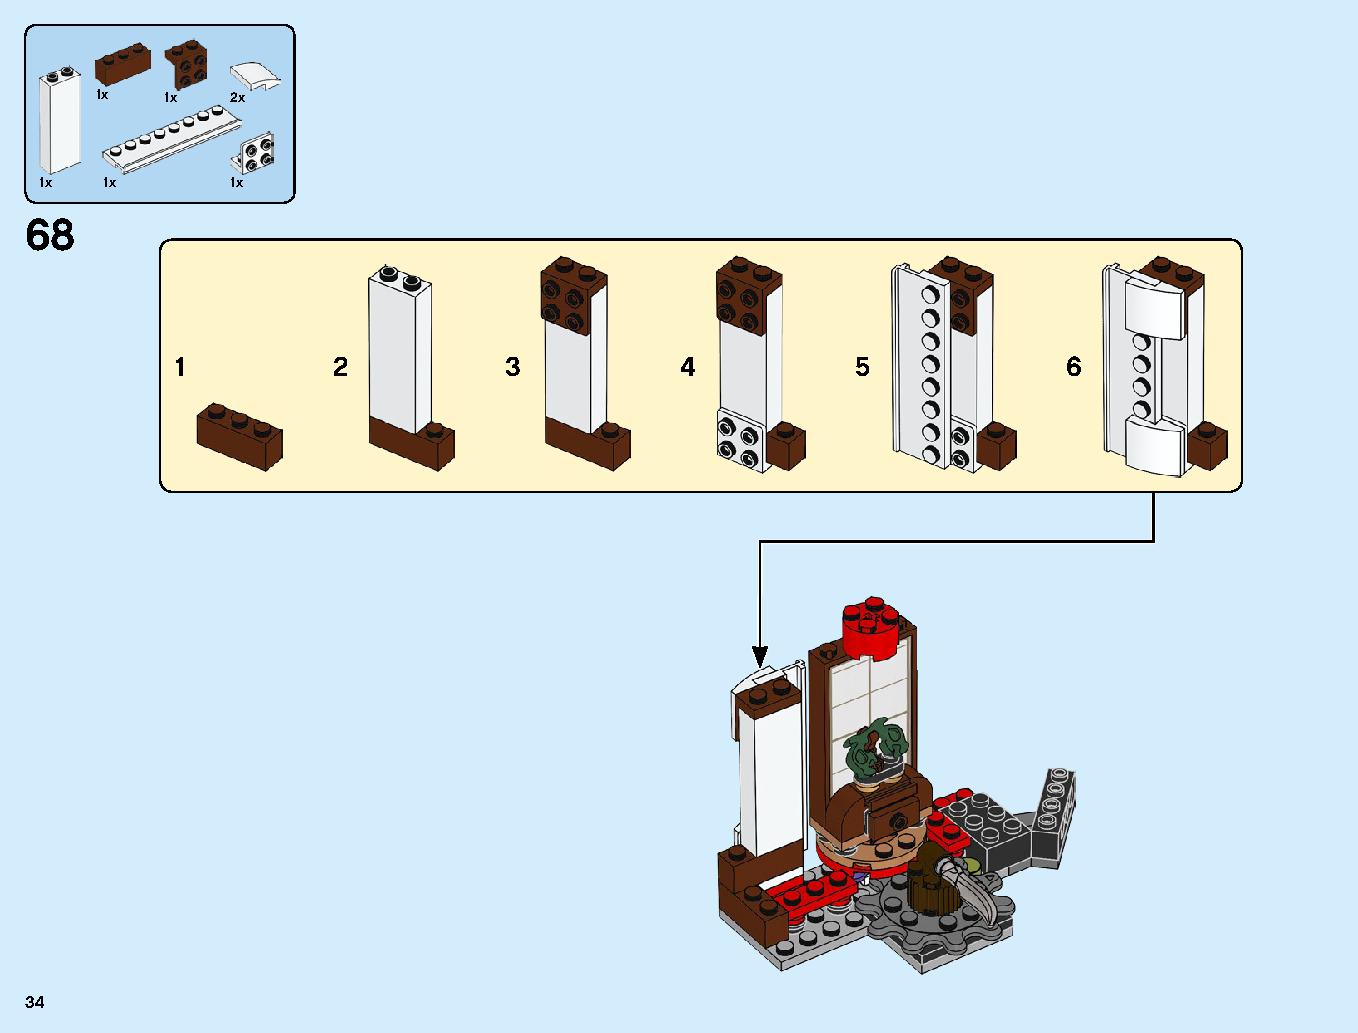 ニンジャ道場 70670 レゴの商品情報 レゴの説明書・組立方法 34 page